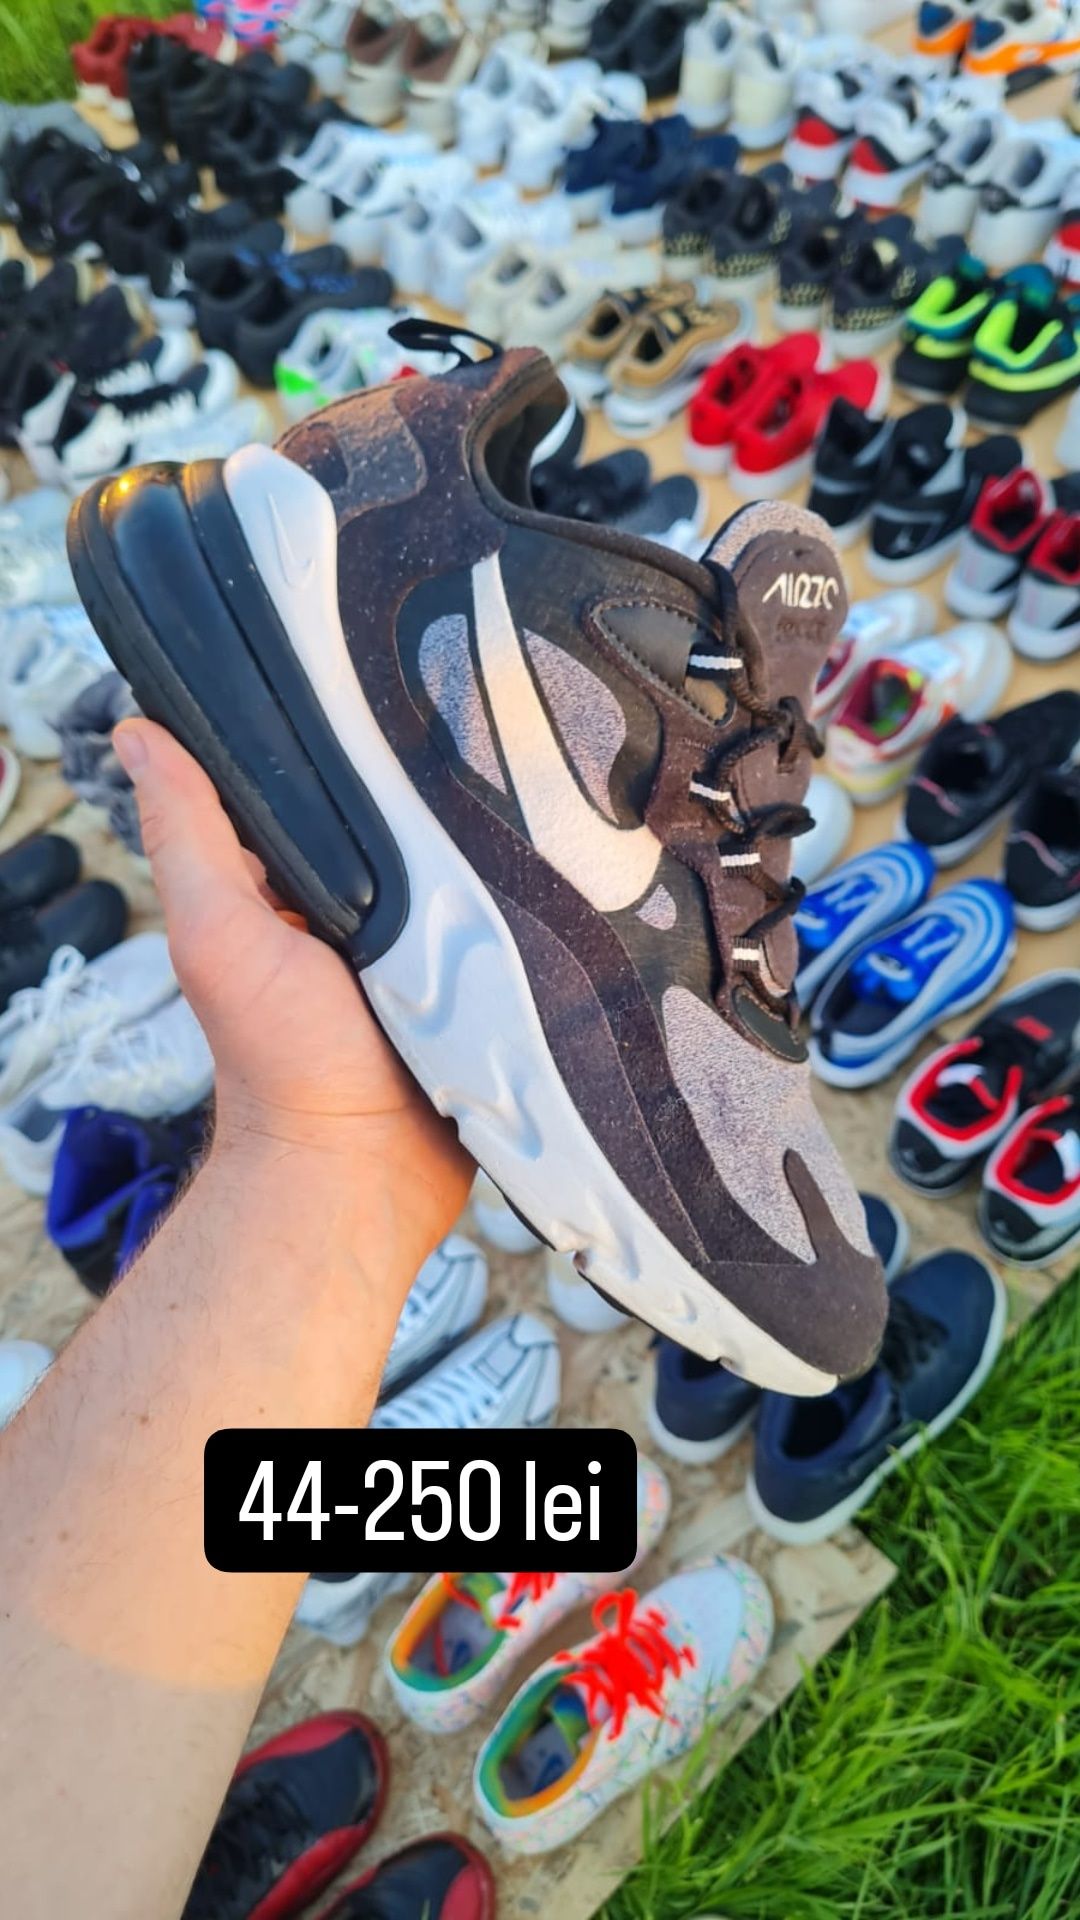 Adidași Nike Air force /Jordan 1,3,4,5